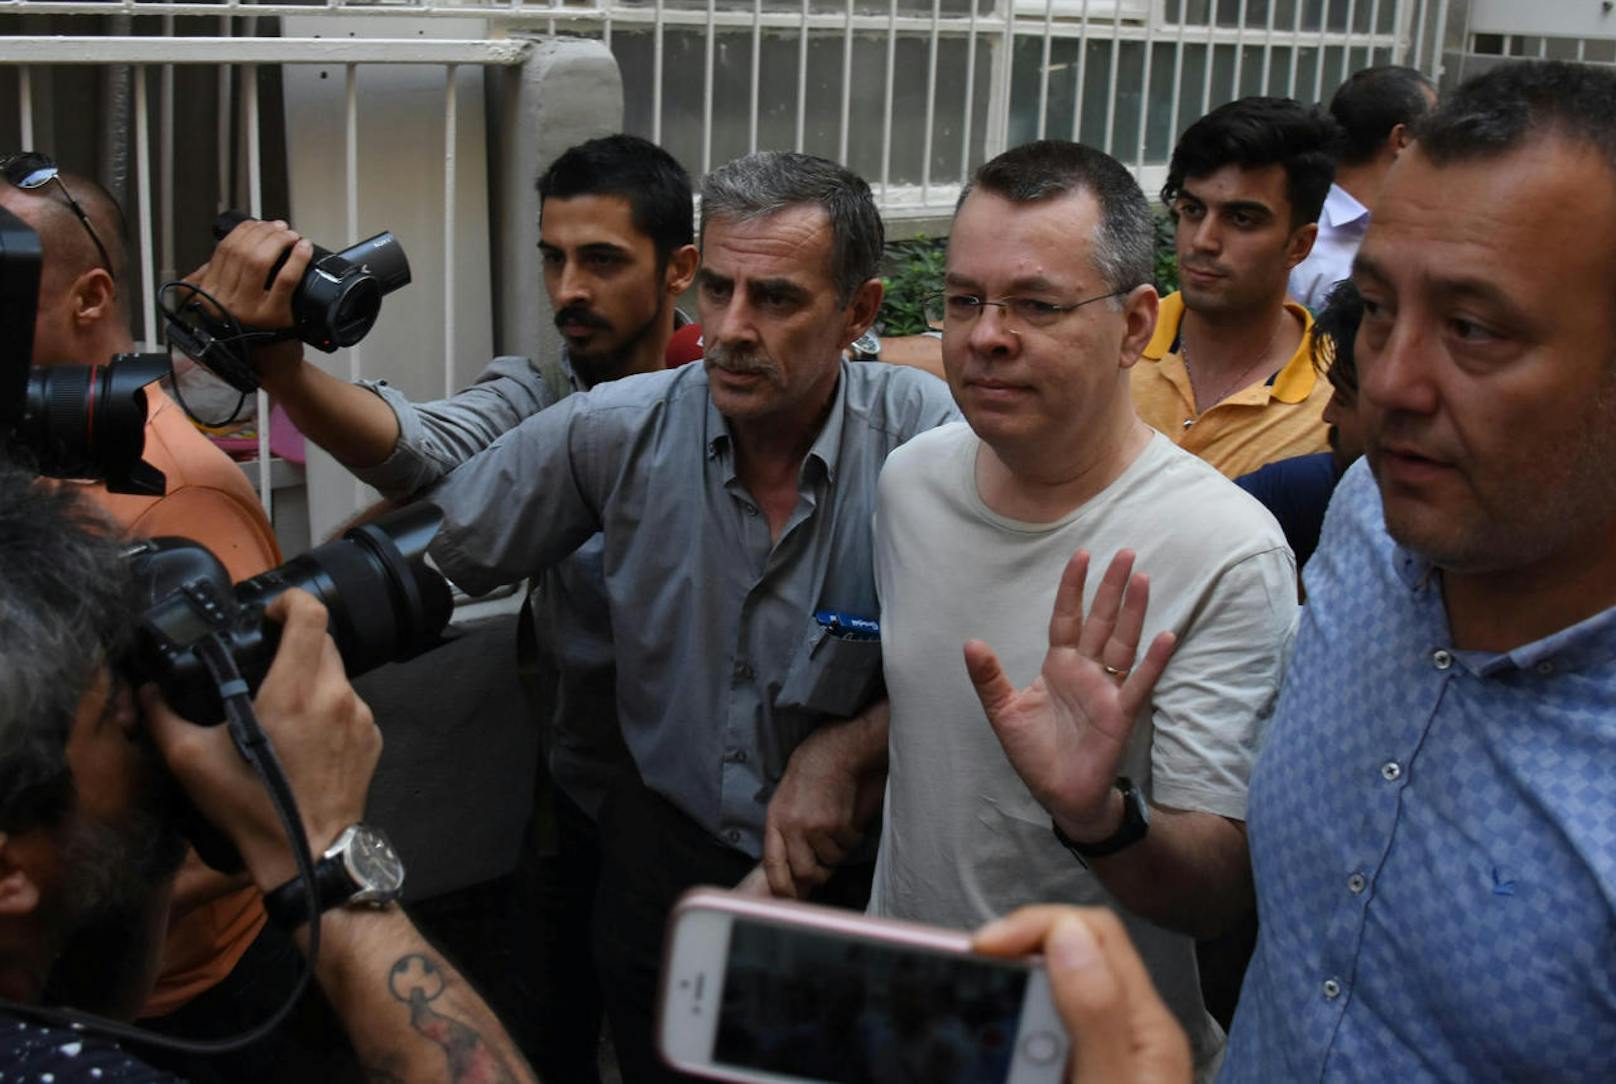 Die USA fordern die Freilassung des in der Türkei unter Hausarrest stehenden US-Pastors Andrew Brunson (Mitte). Erdogan wiederum fordert von den USA, den türkischen Prediger Fethullah Gülen auszuliefern.